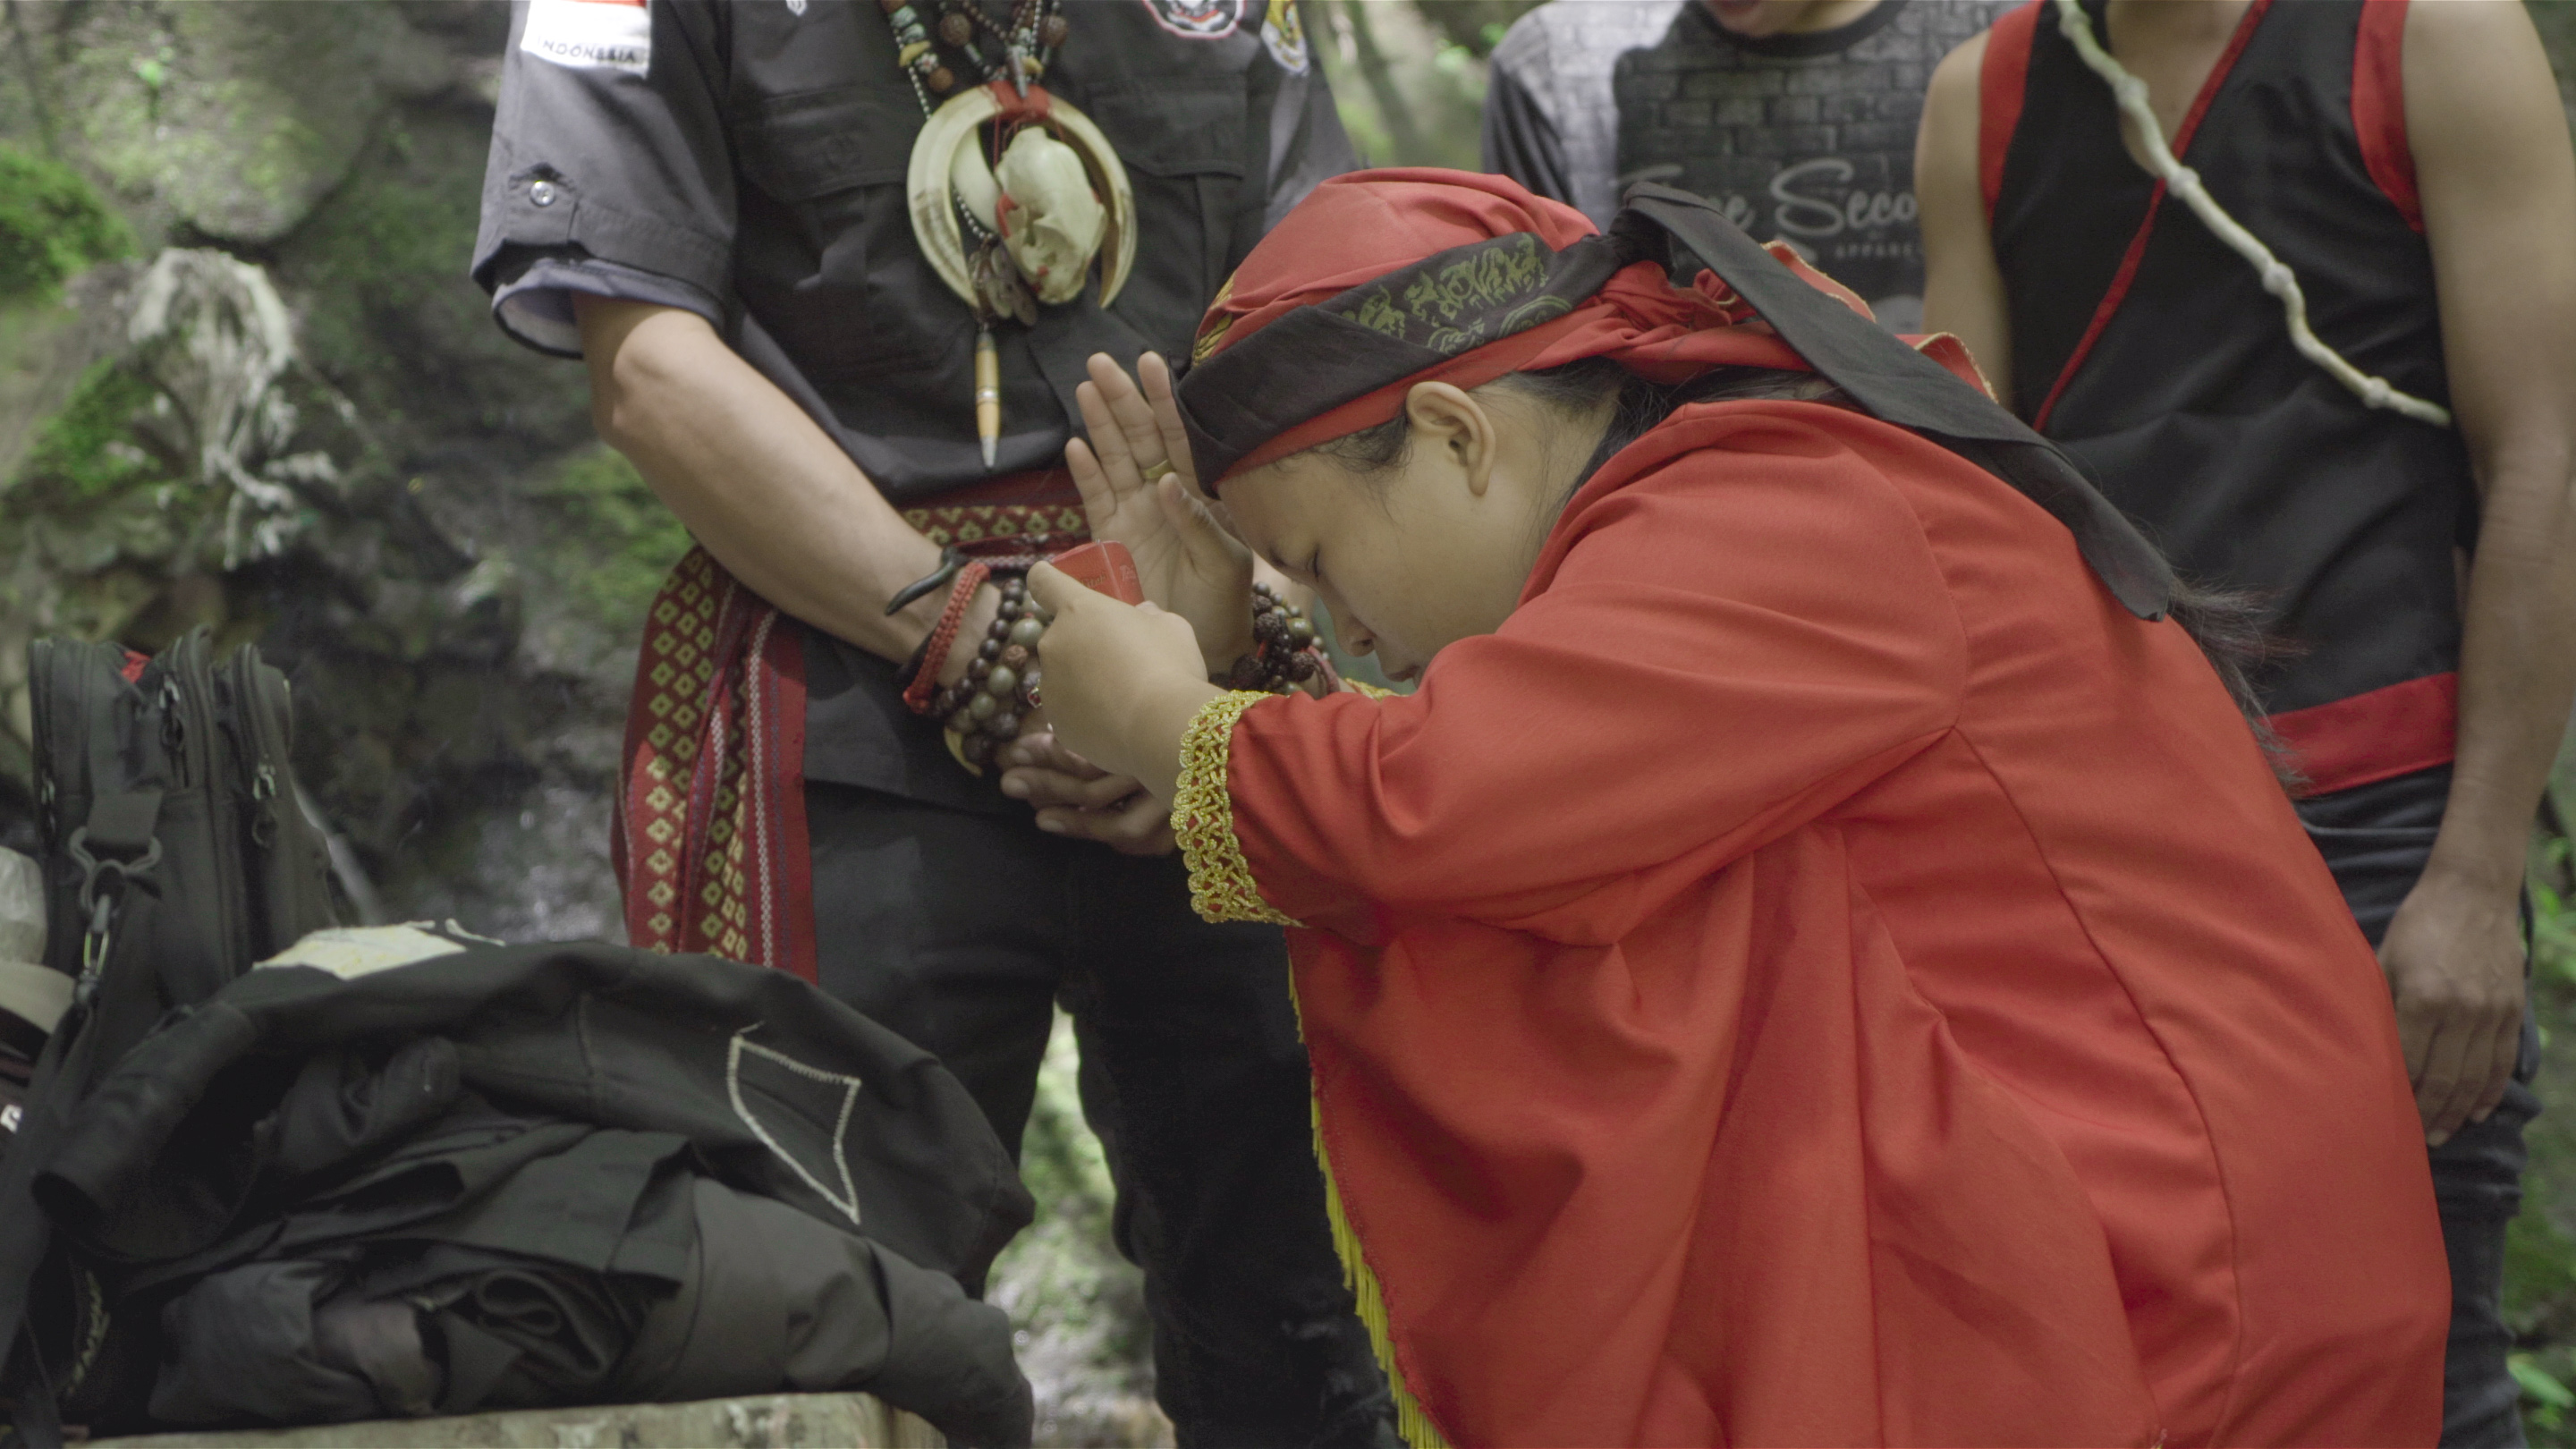 sjamaan bidt met gebogen rug, gekleed in een rood gewaad en hoofddeksel, omringd door toeschouwers